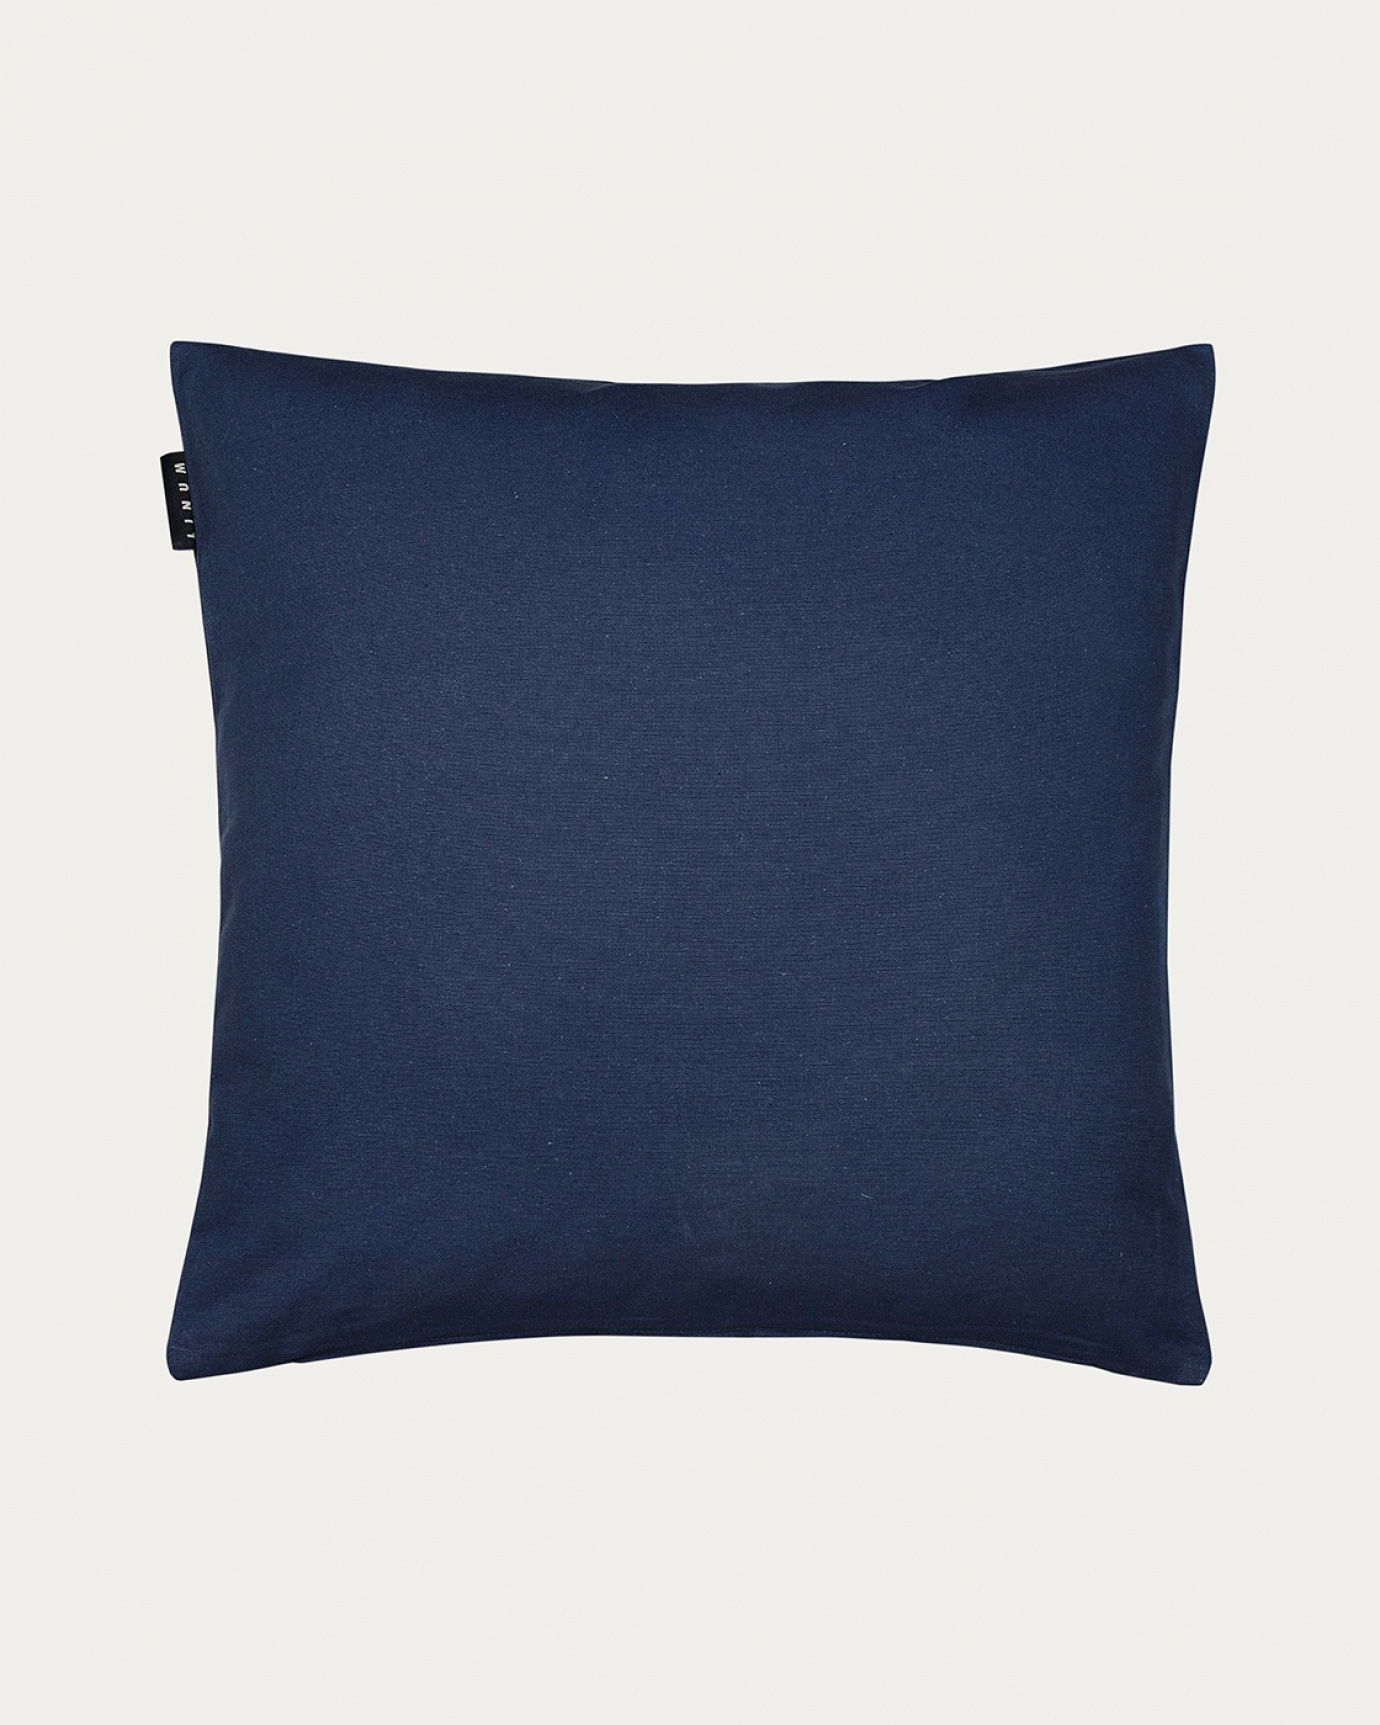 Image du produit housse de coussin ANNABELL bleu outre mer en coton doux de LINUM DESIGN. Taille 50 x 50 cm.